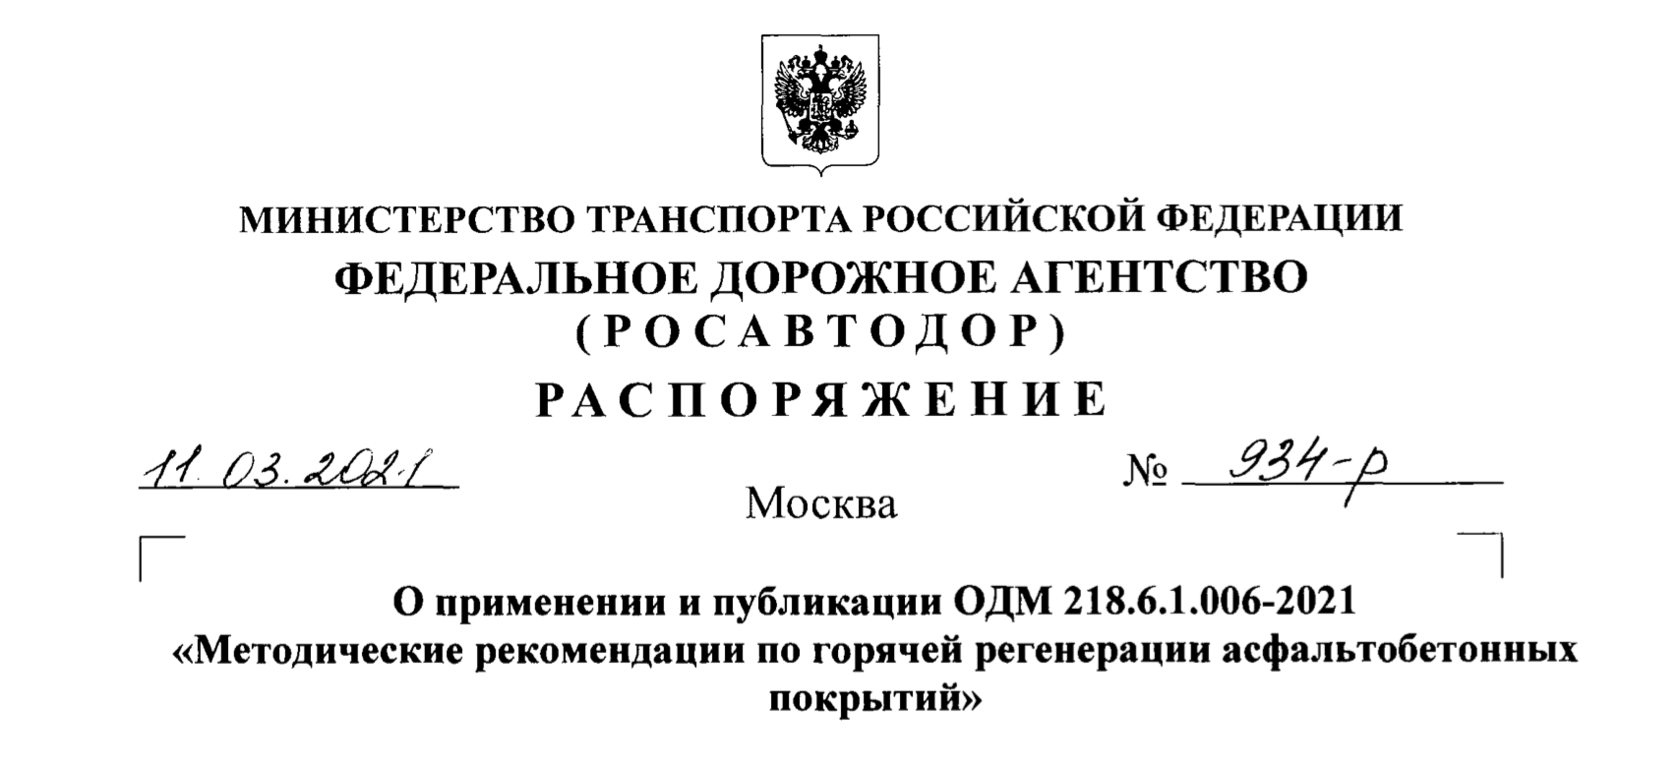 ОДМ 218.6.1.006-2021